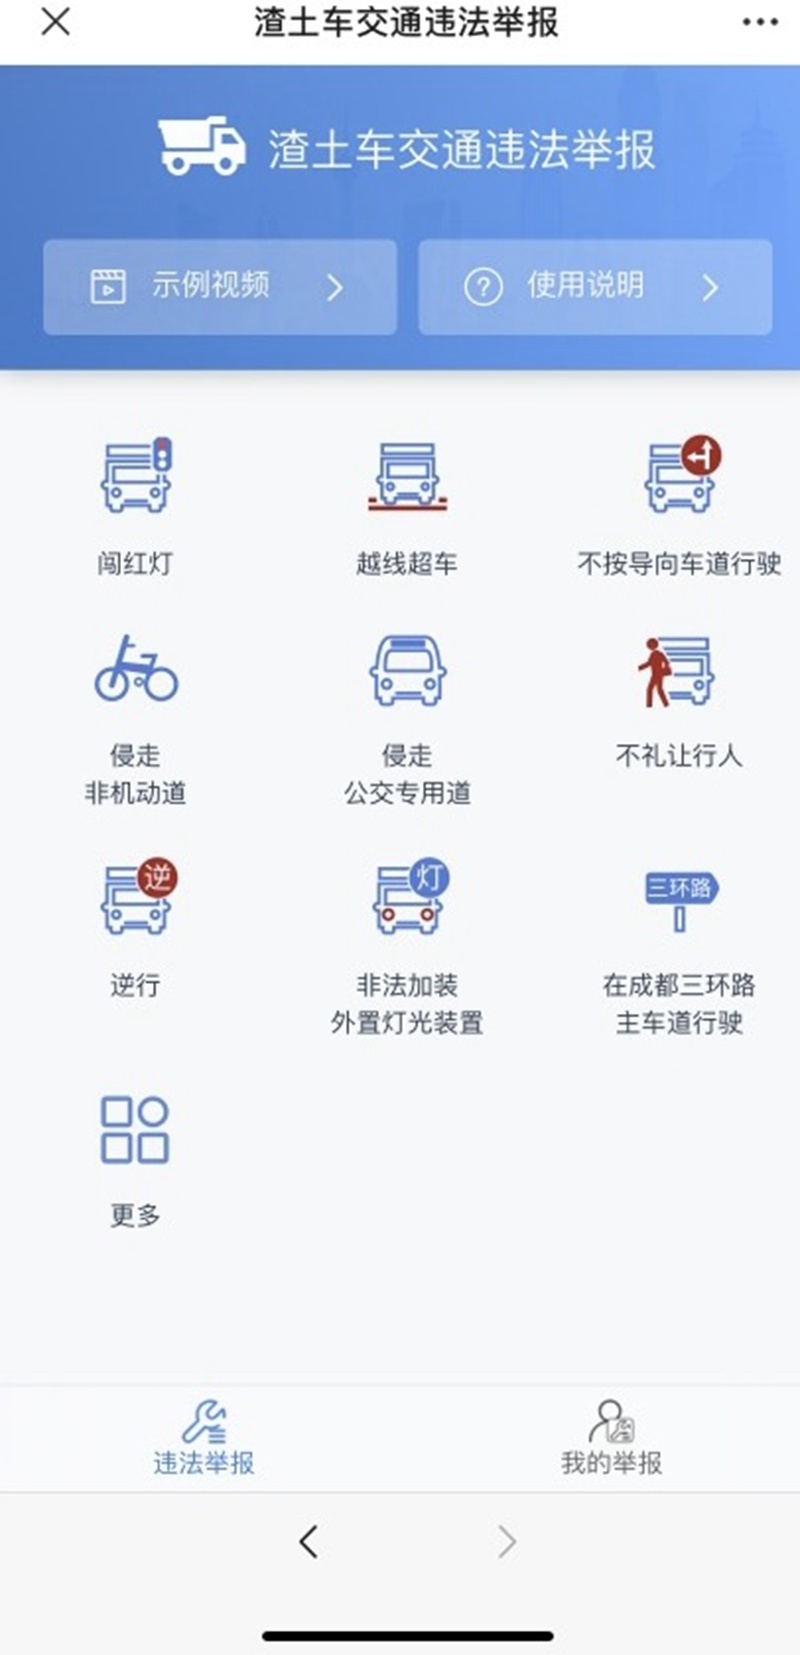 成都交警在蓉e行平台开通“渣土车违法举报功能”